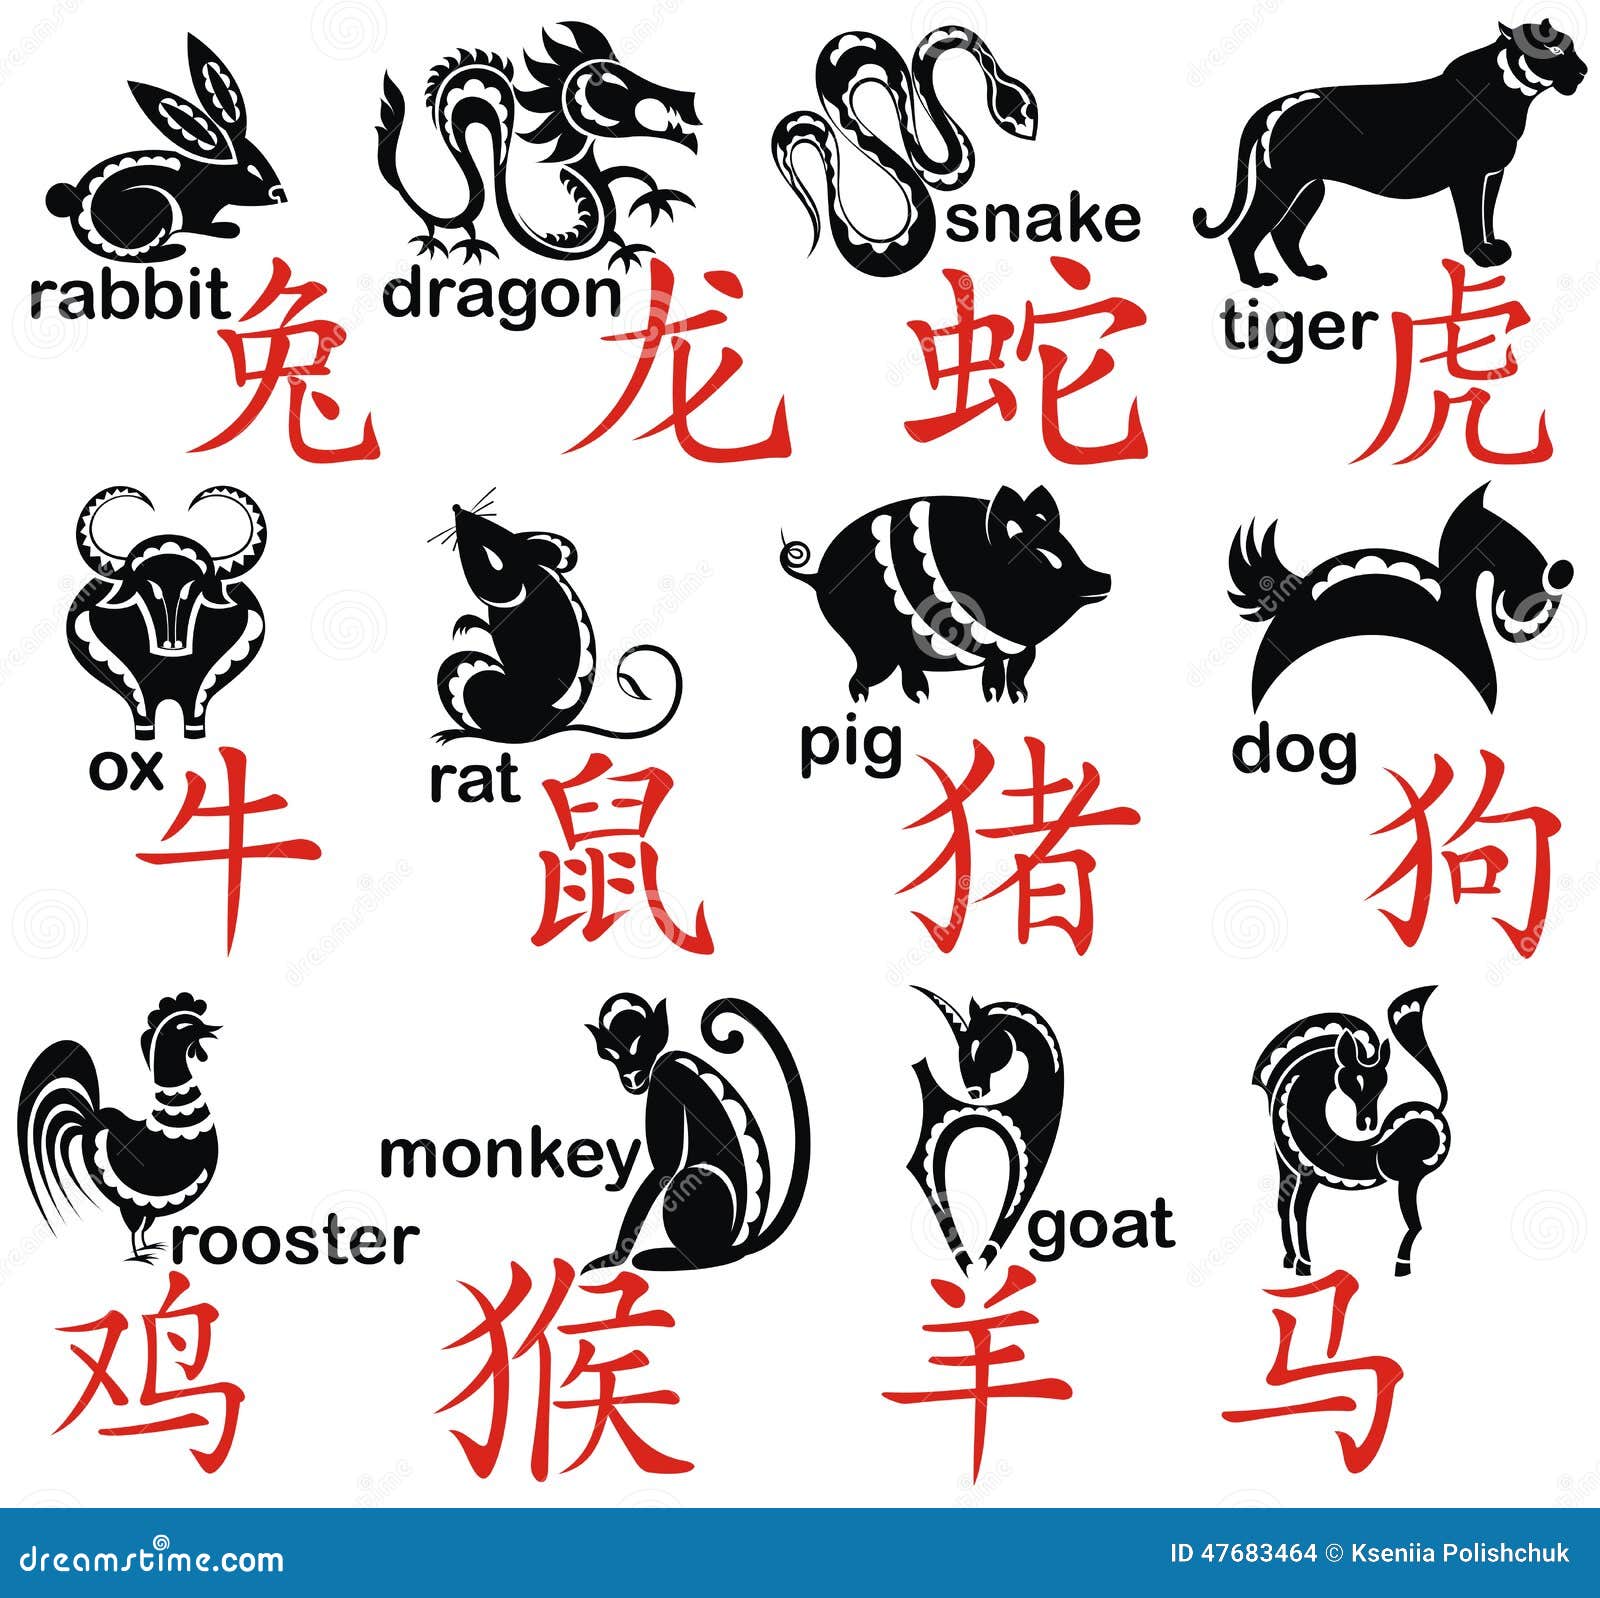 Знаки зодиака на китайском. Японские символы животных. Японские символы года. Китайские знаки знаки зодиака. Китайские символы животных.